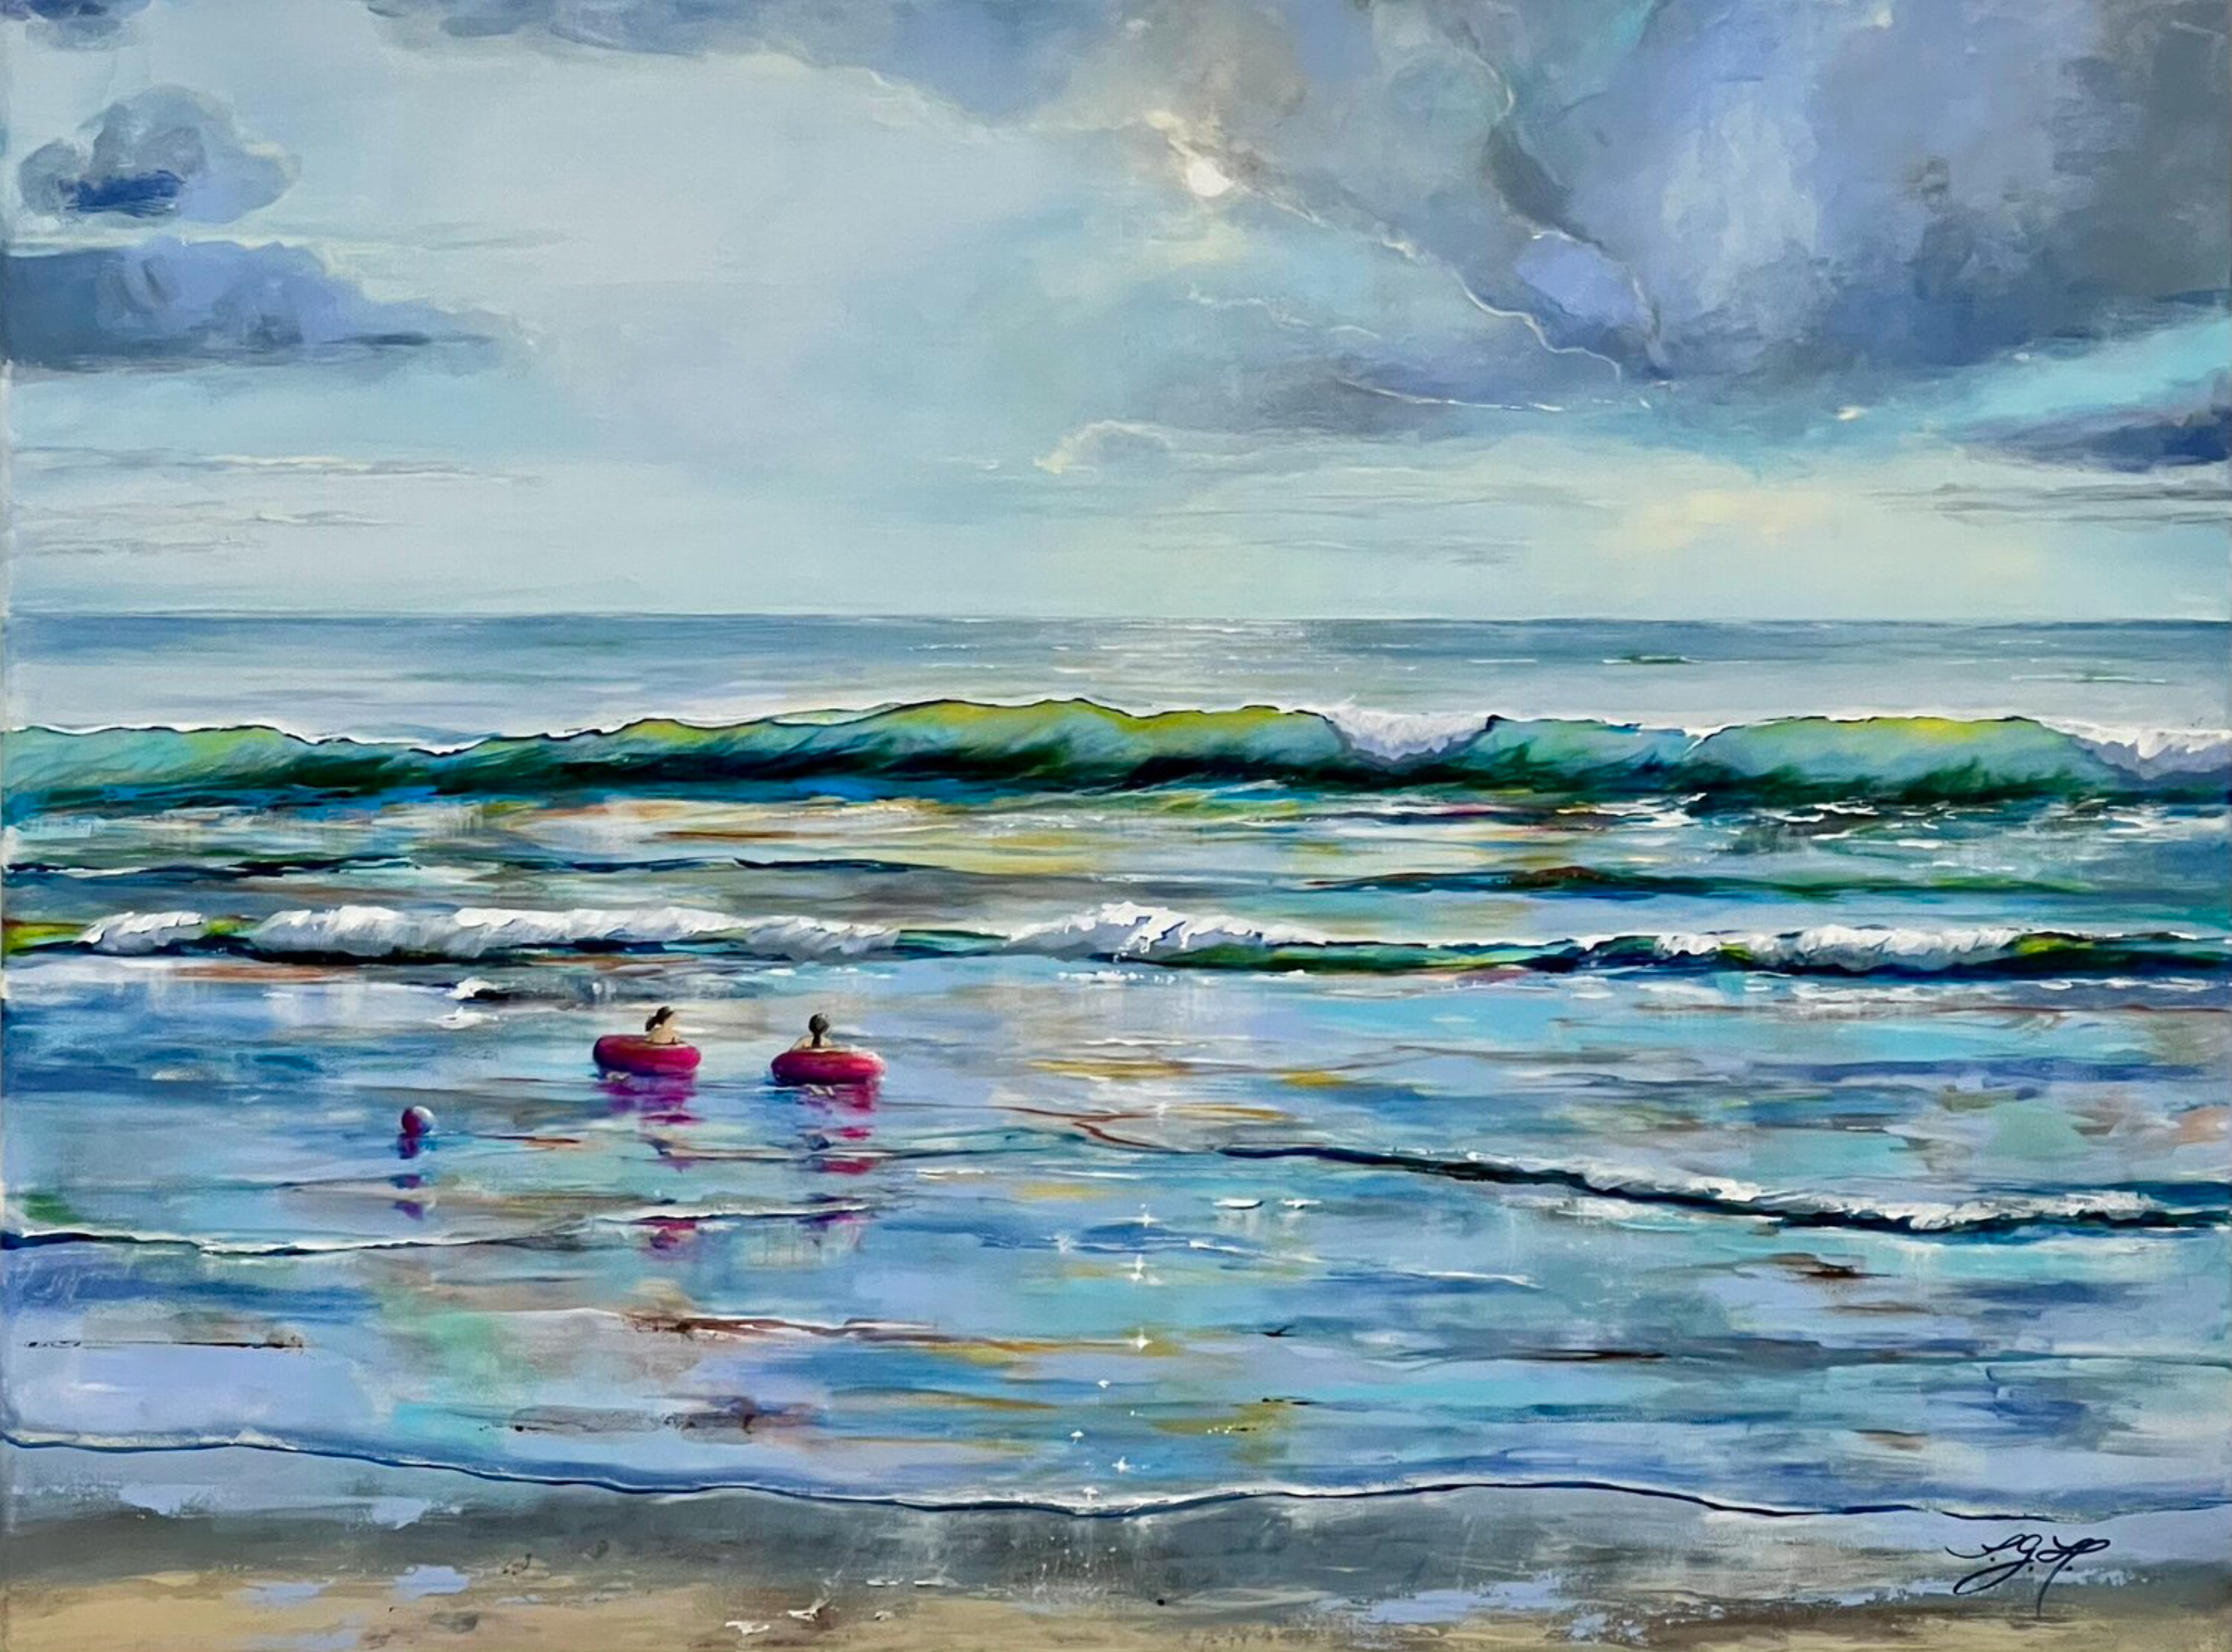 Le tableau "Summertime 1" de Sandra Gebhardt-Hoepfner montre, l'été au bord de la mer. Le temps s'arrête et l'été semble infini. Tout est possible. Les enfants flottent sur les douces vagues de l'océan avec leurs bouées roses. Les couleurs principales sont le bleu clair, le blanc, le gris clair, le turquoise, le gris foncé, le rose, le brun sable.